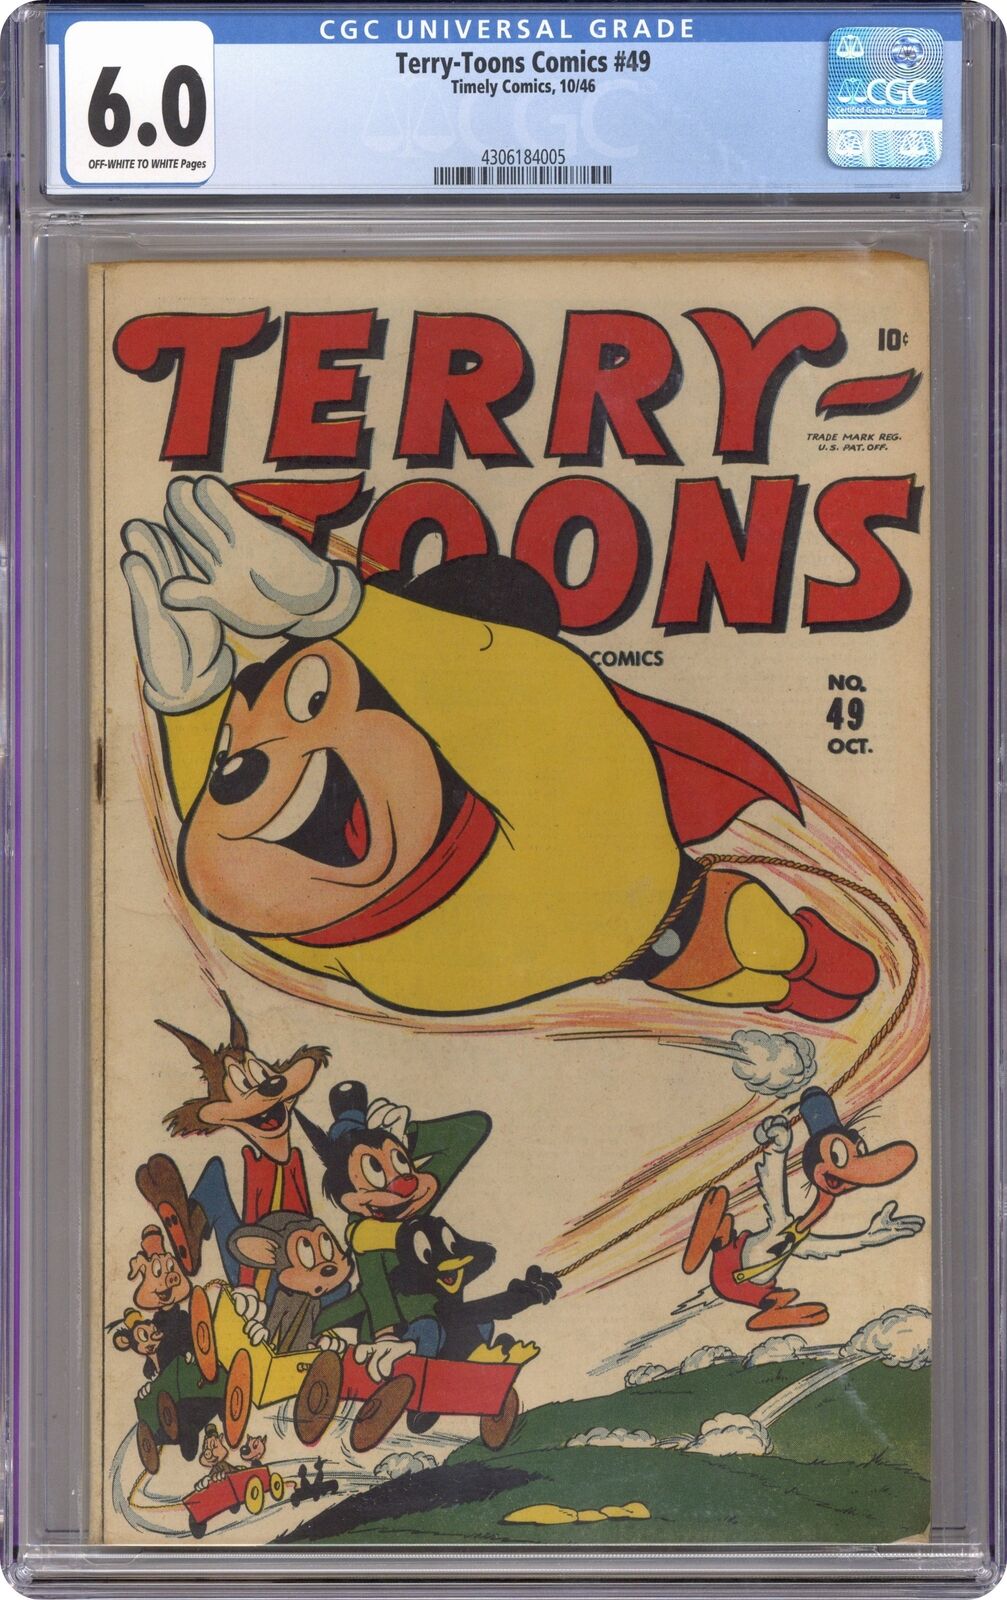 Terry-Toons Comics #49 CGC 6.0 1946 4306184005